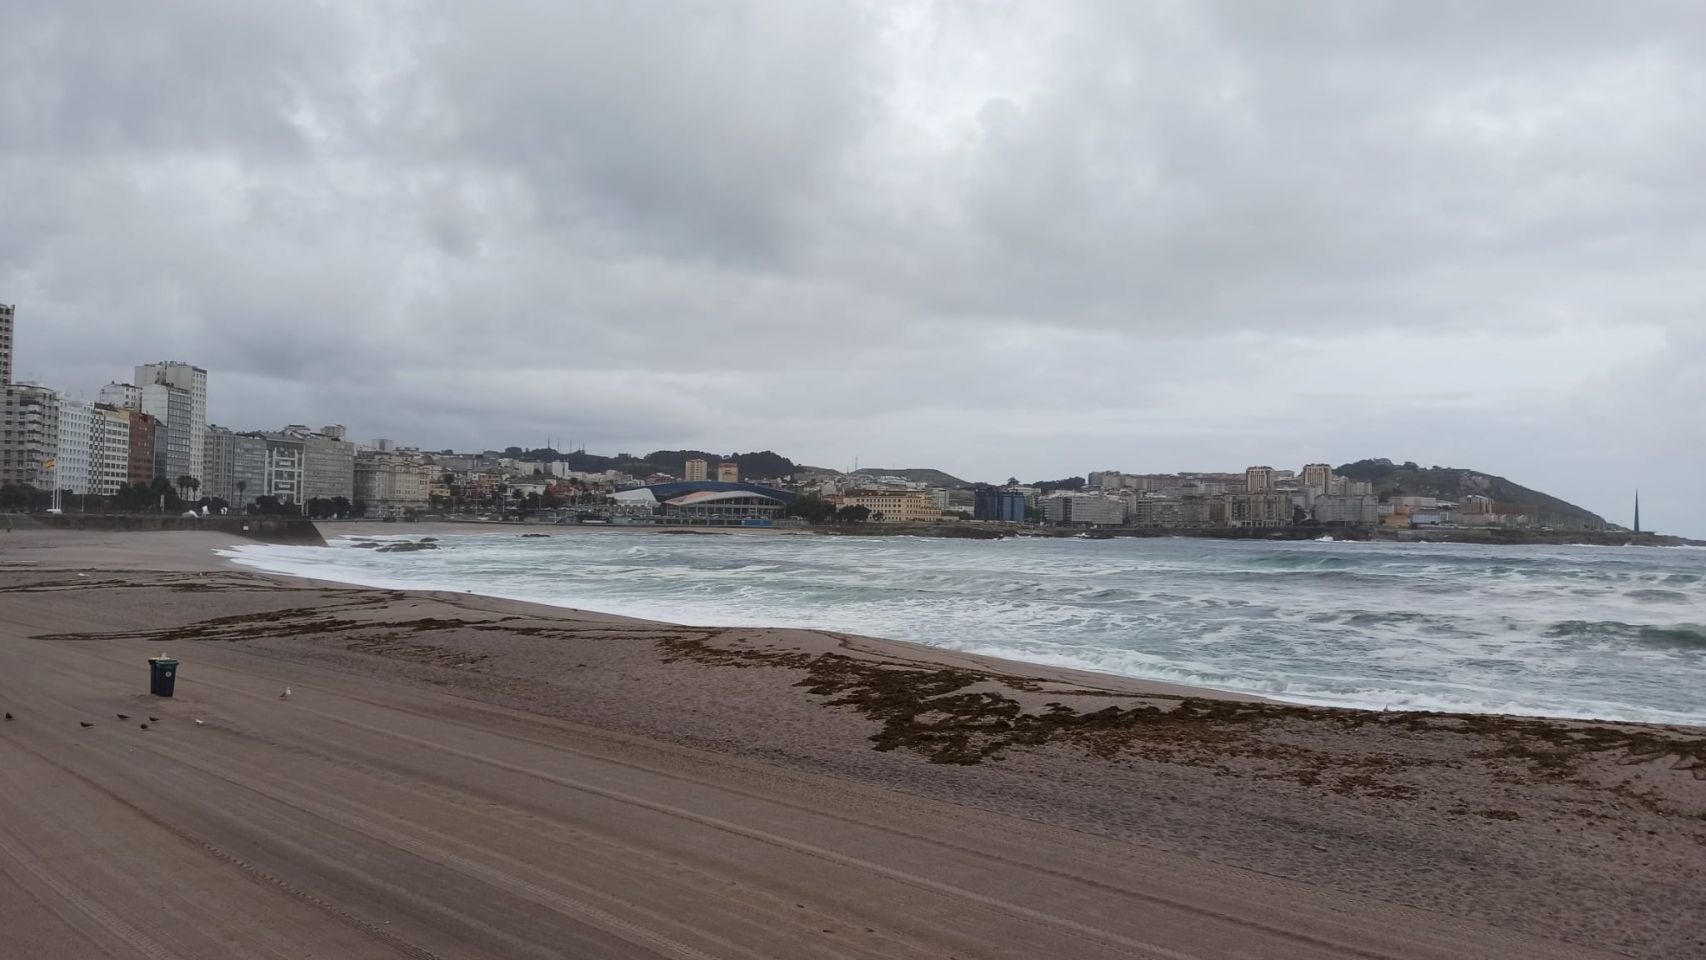 La playa del Orzán, en A Coruña, durante la mañana de una jornada lluviosa.